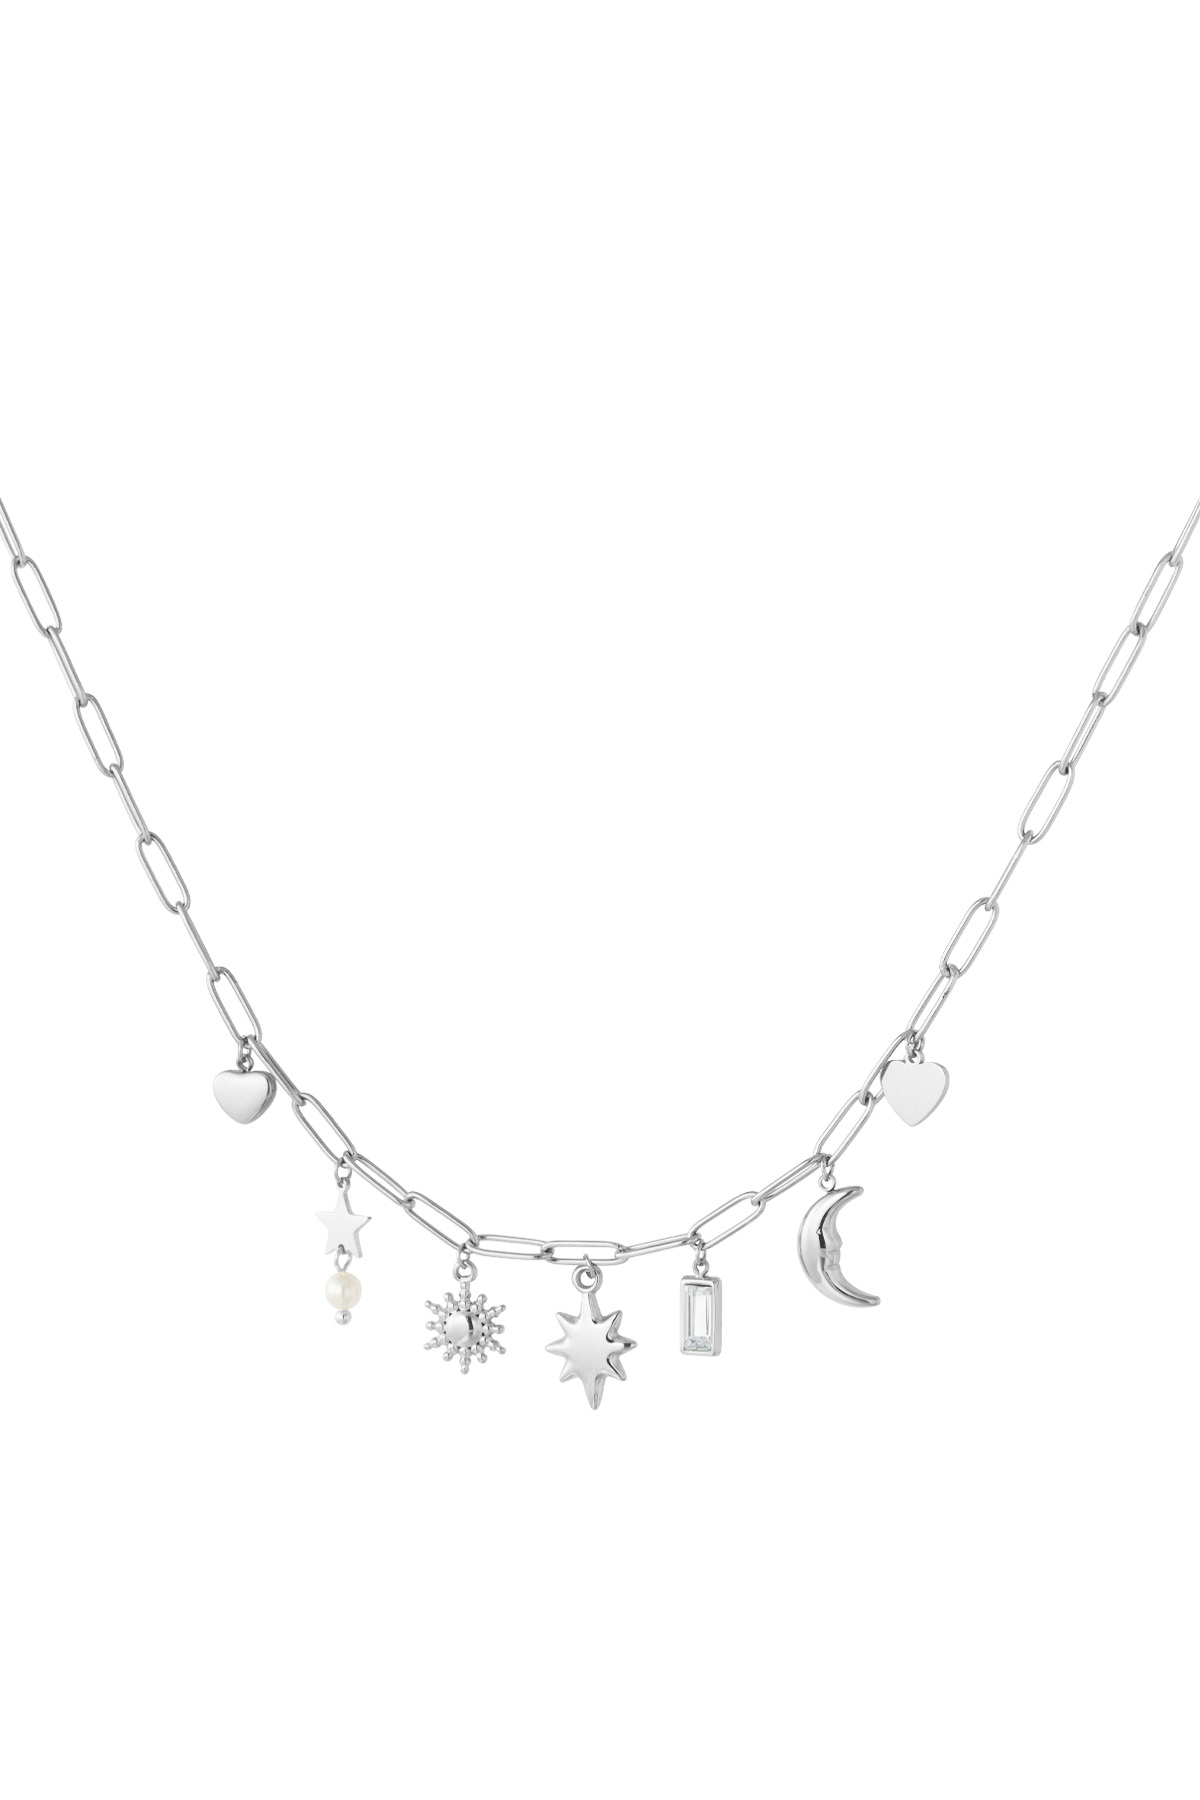 Tag- und Nacht-Charm-Halskette – Silber